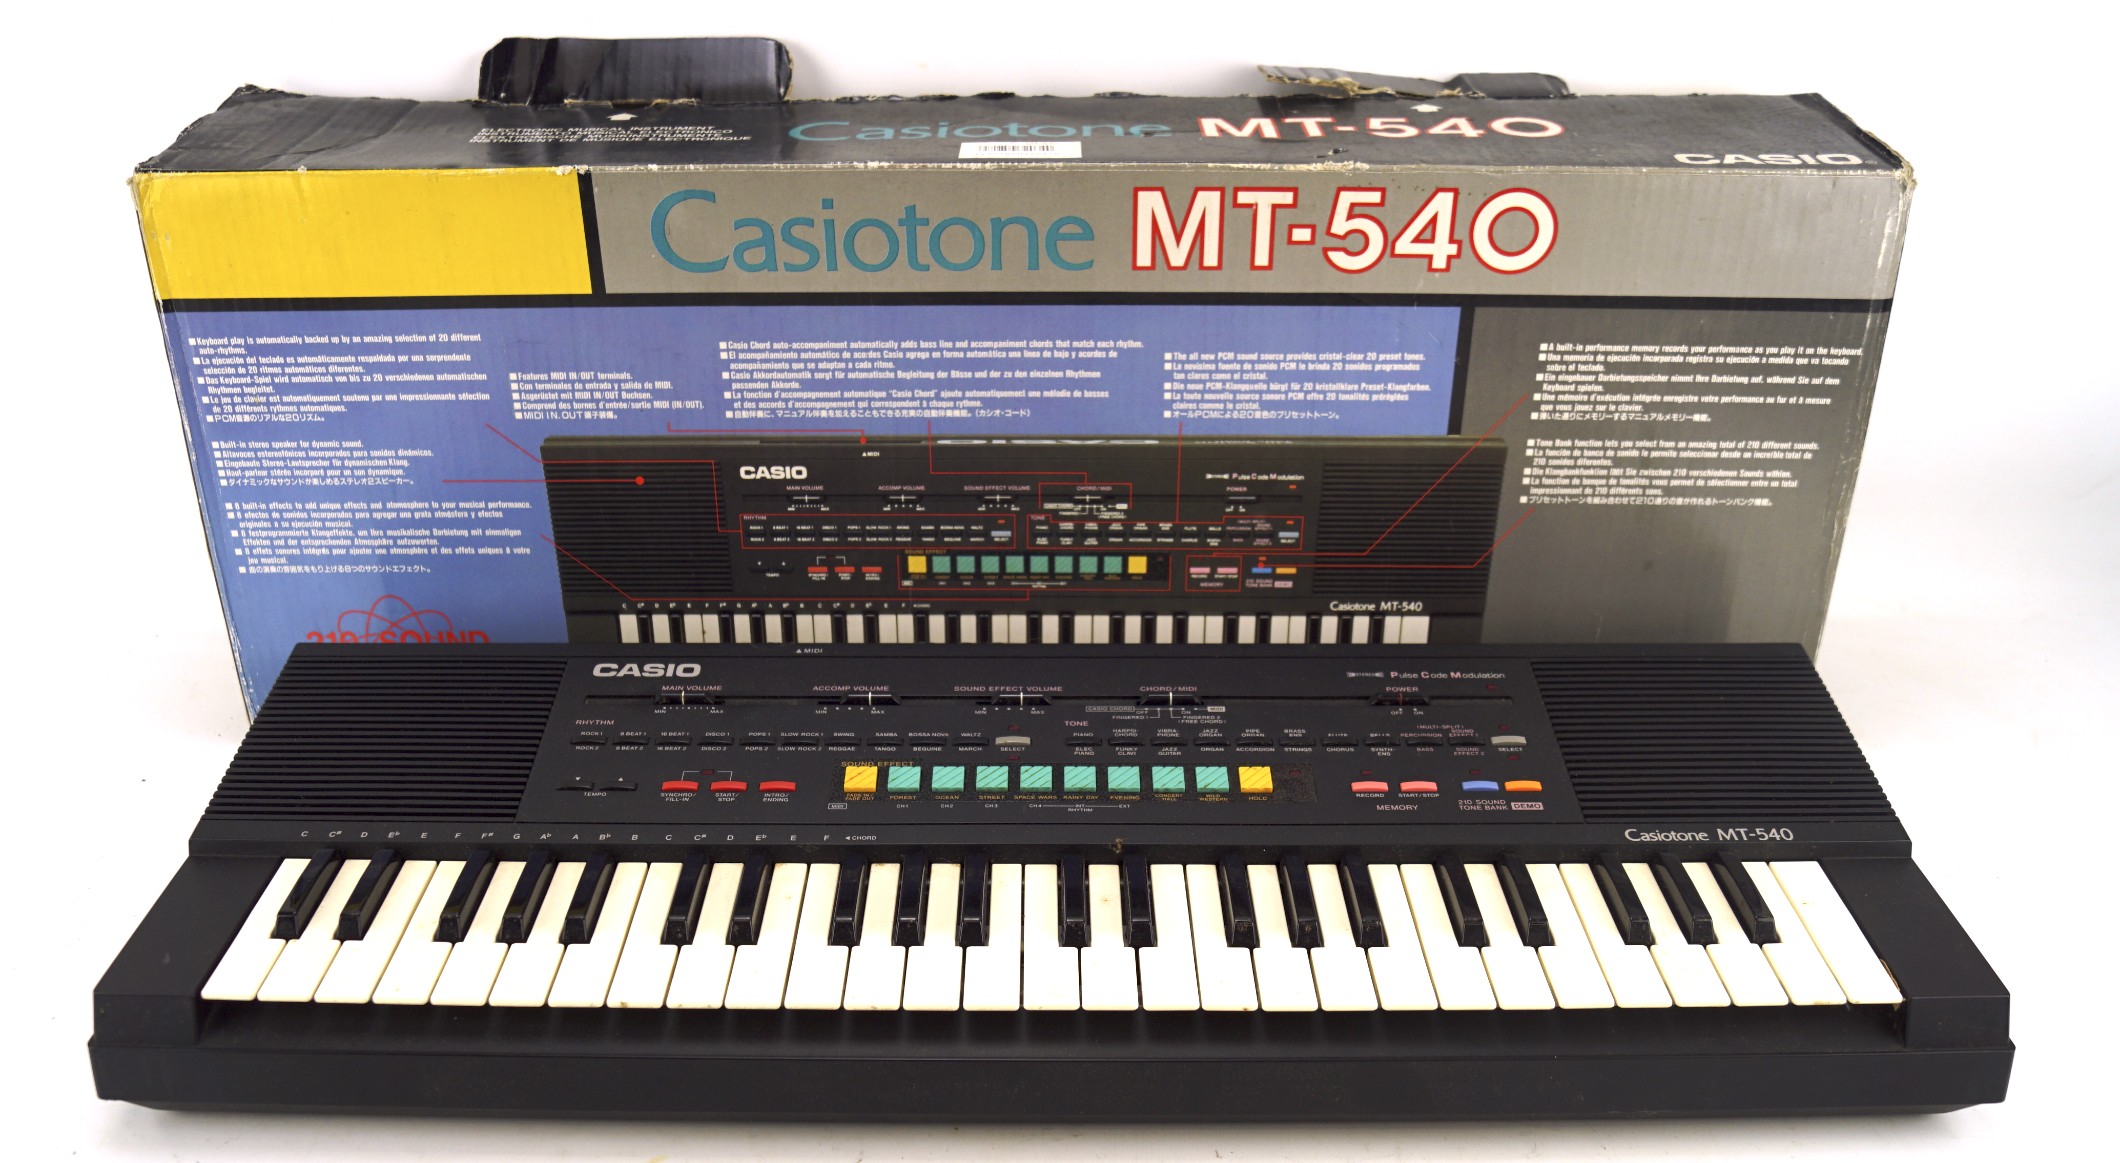 A Casio 210 sound tone bank keyboard, in original box,